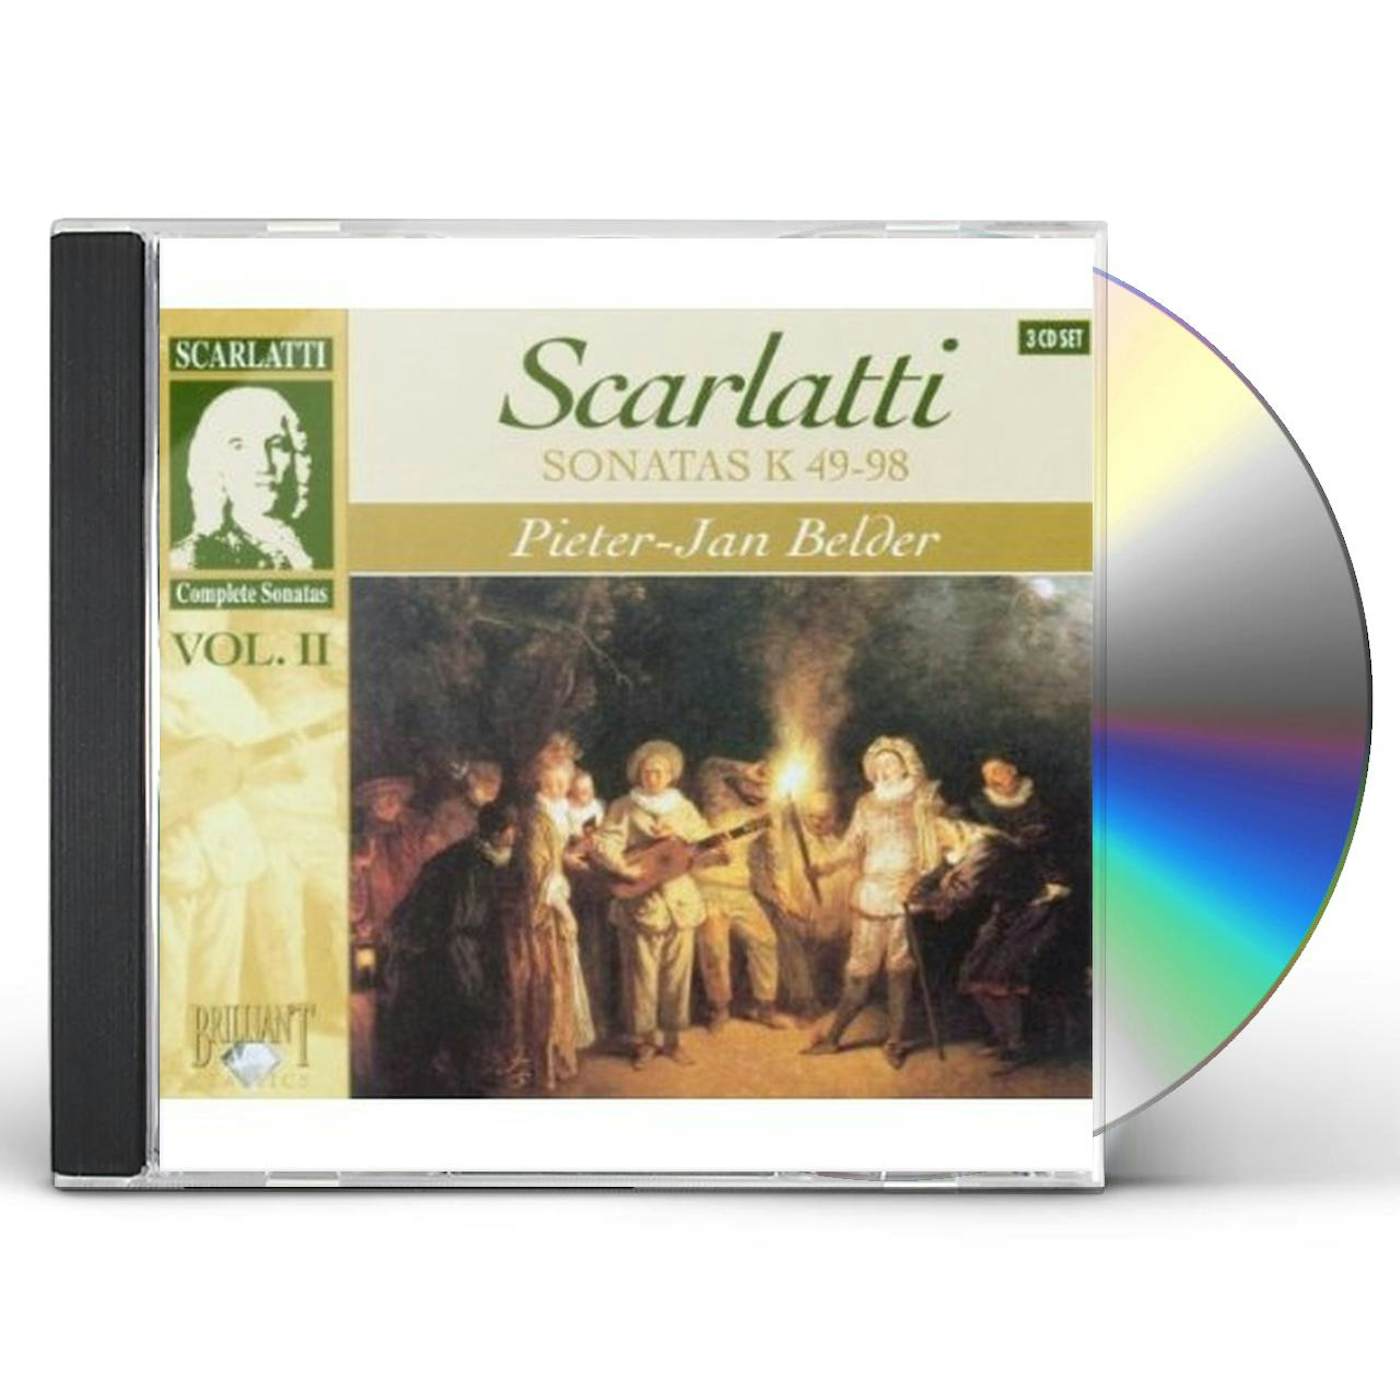 Scarlatti COMPLETE SONATAS 2 CD